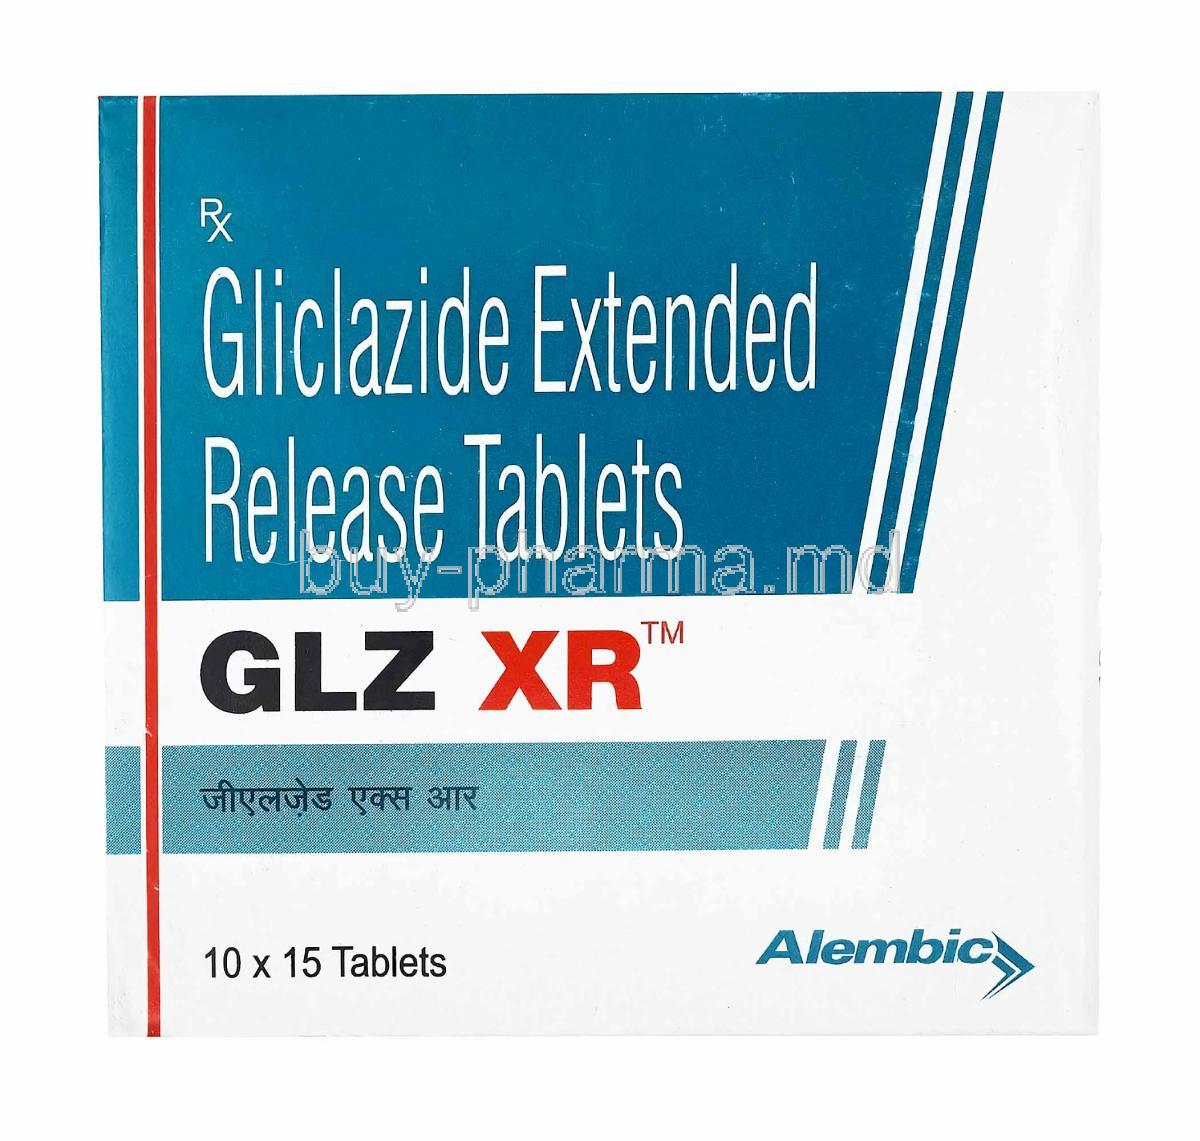 GLZ XR, Gliclazide